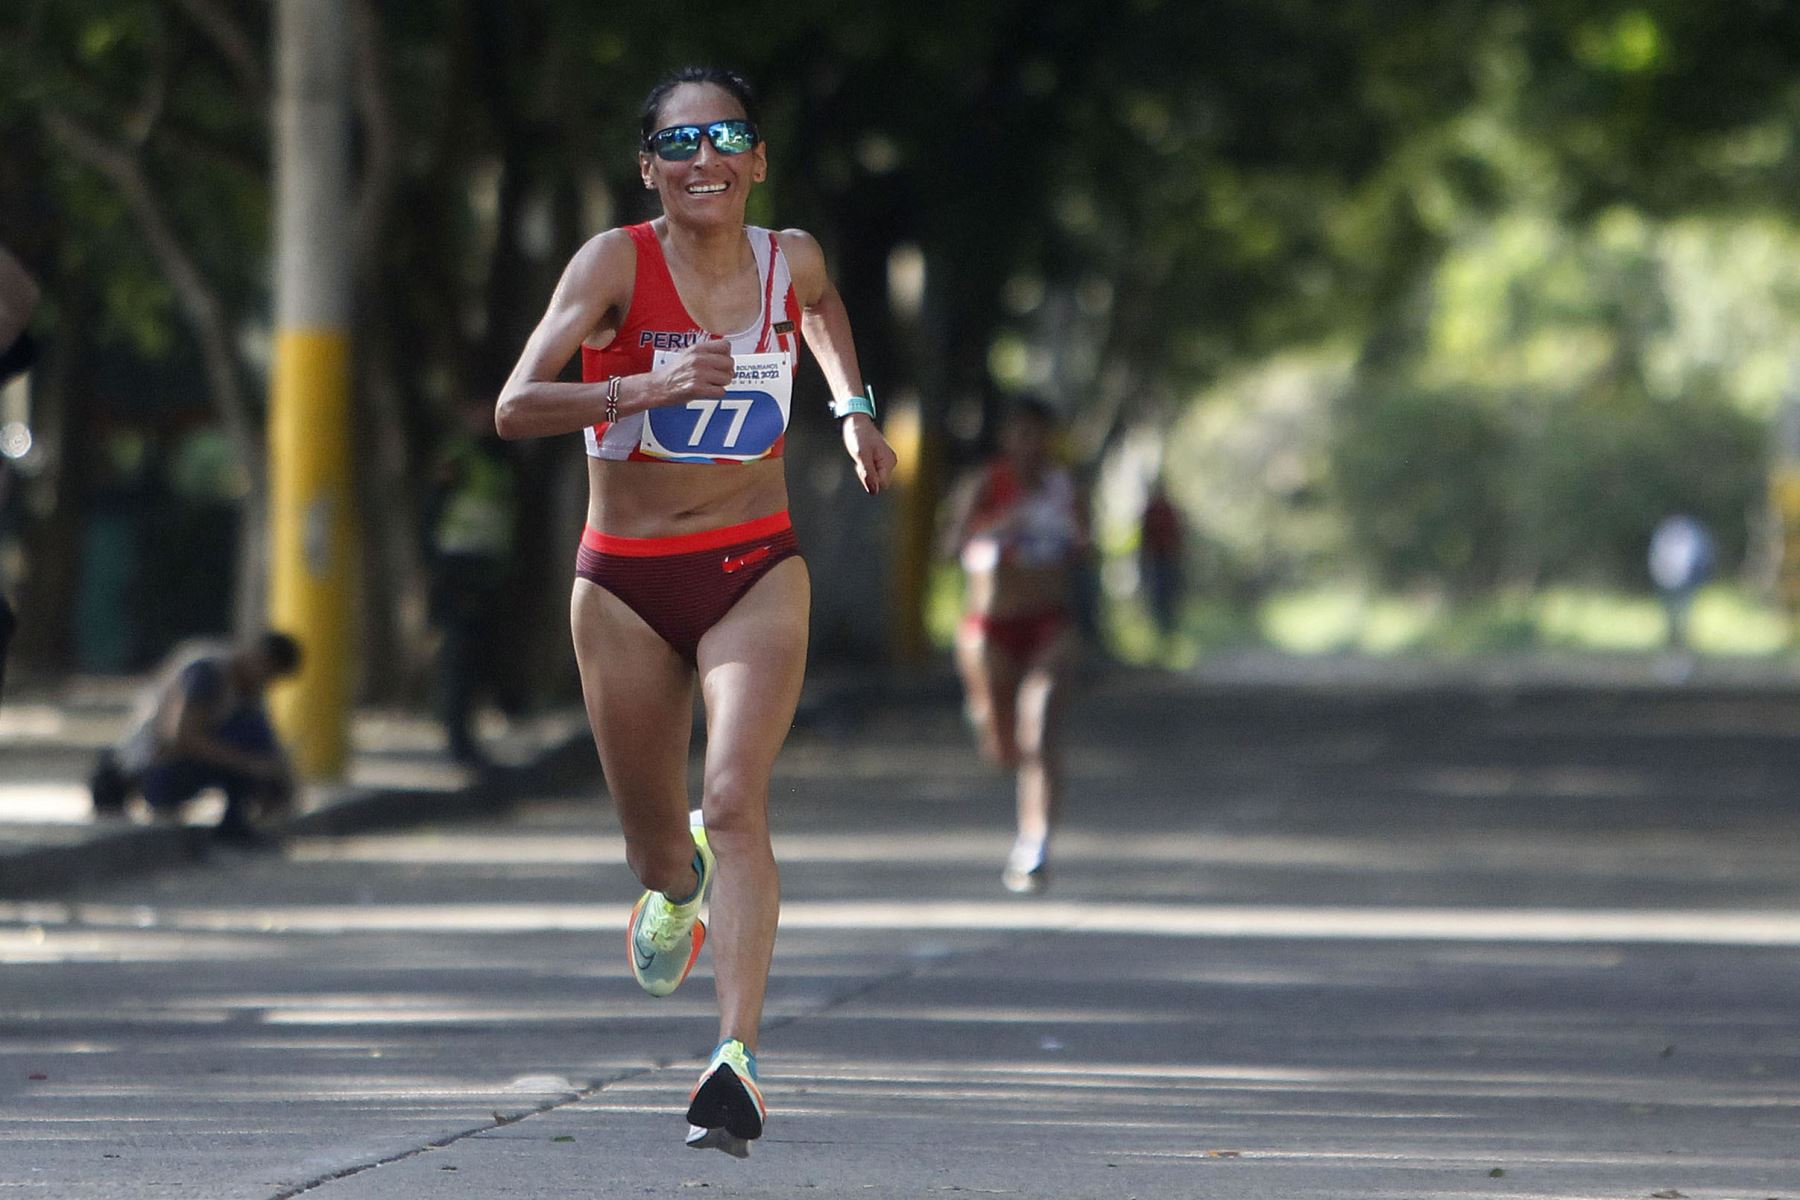 Gladys Lucy Tejeda de Perú  gana la medalla de oro en la media maratón femenina  en los XIX Juegos Bolivarianos en Valledupar.
Foto: EFE